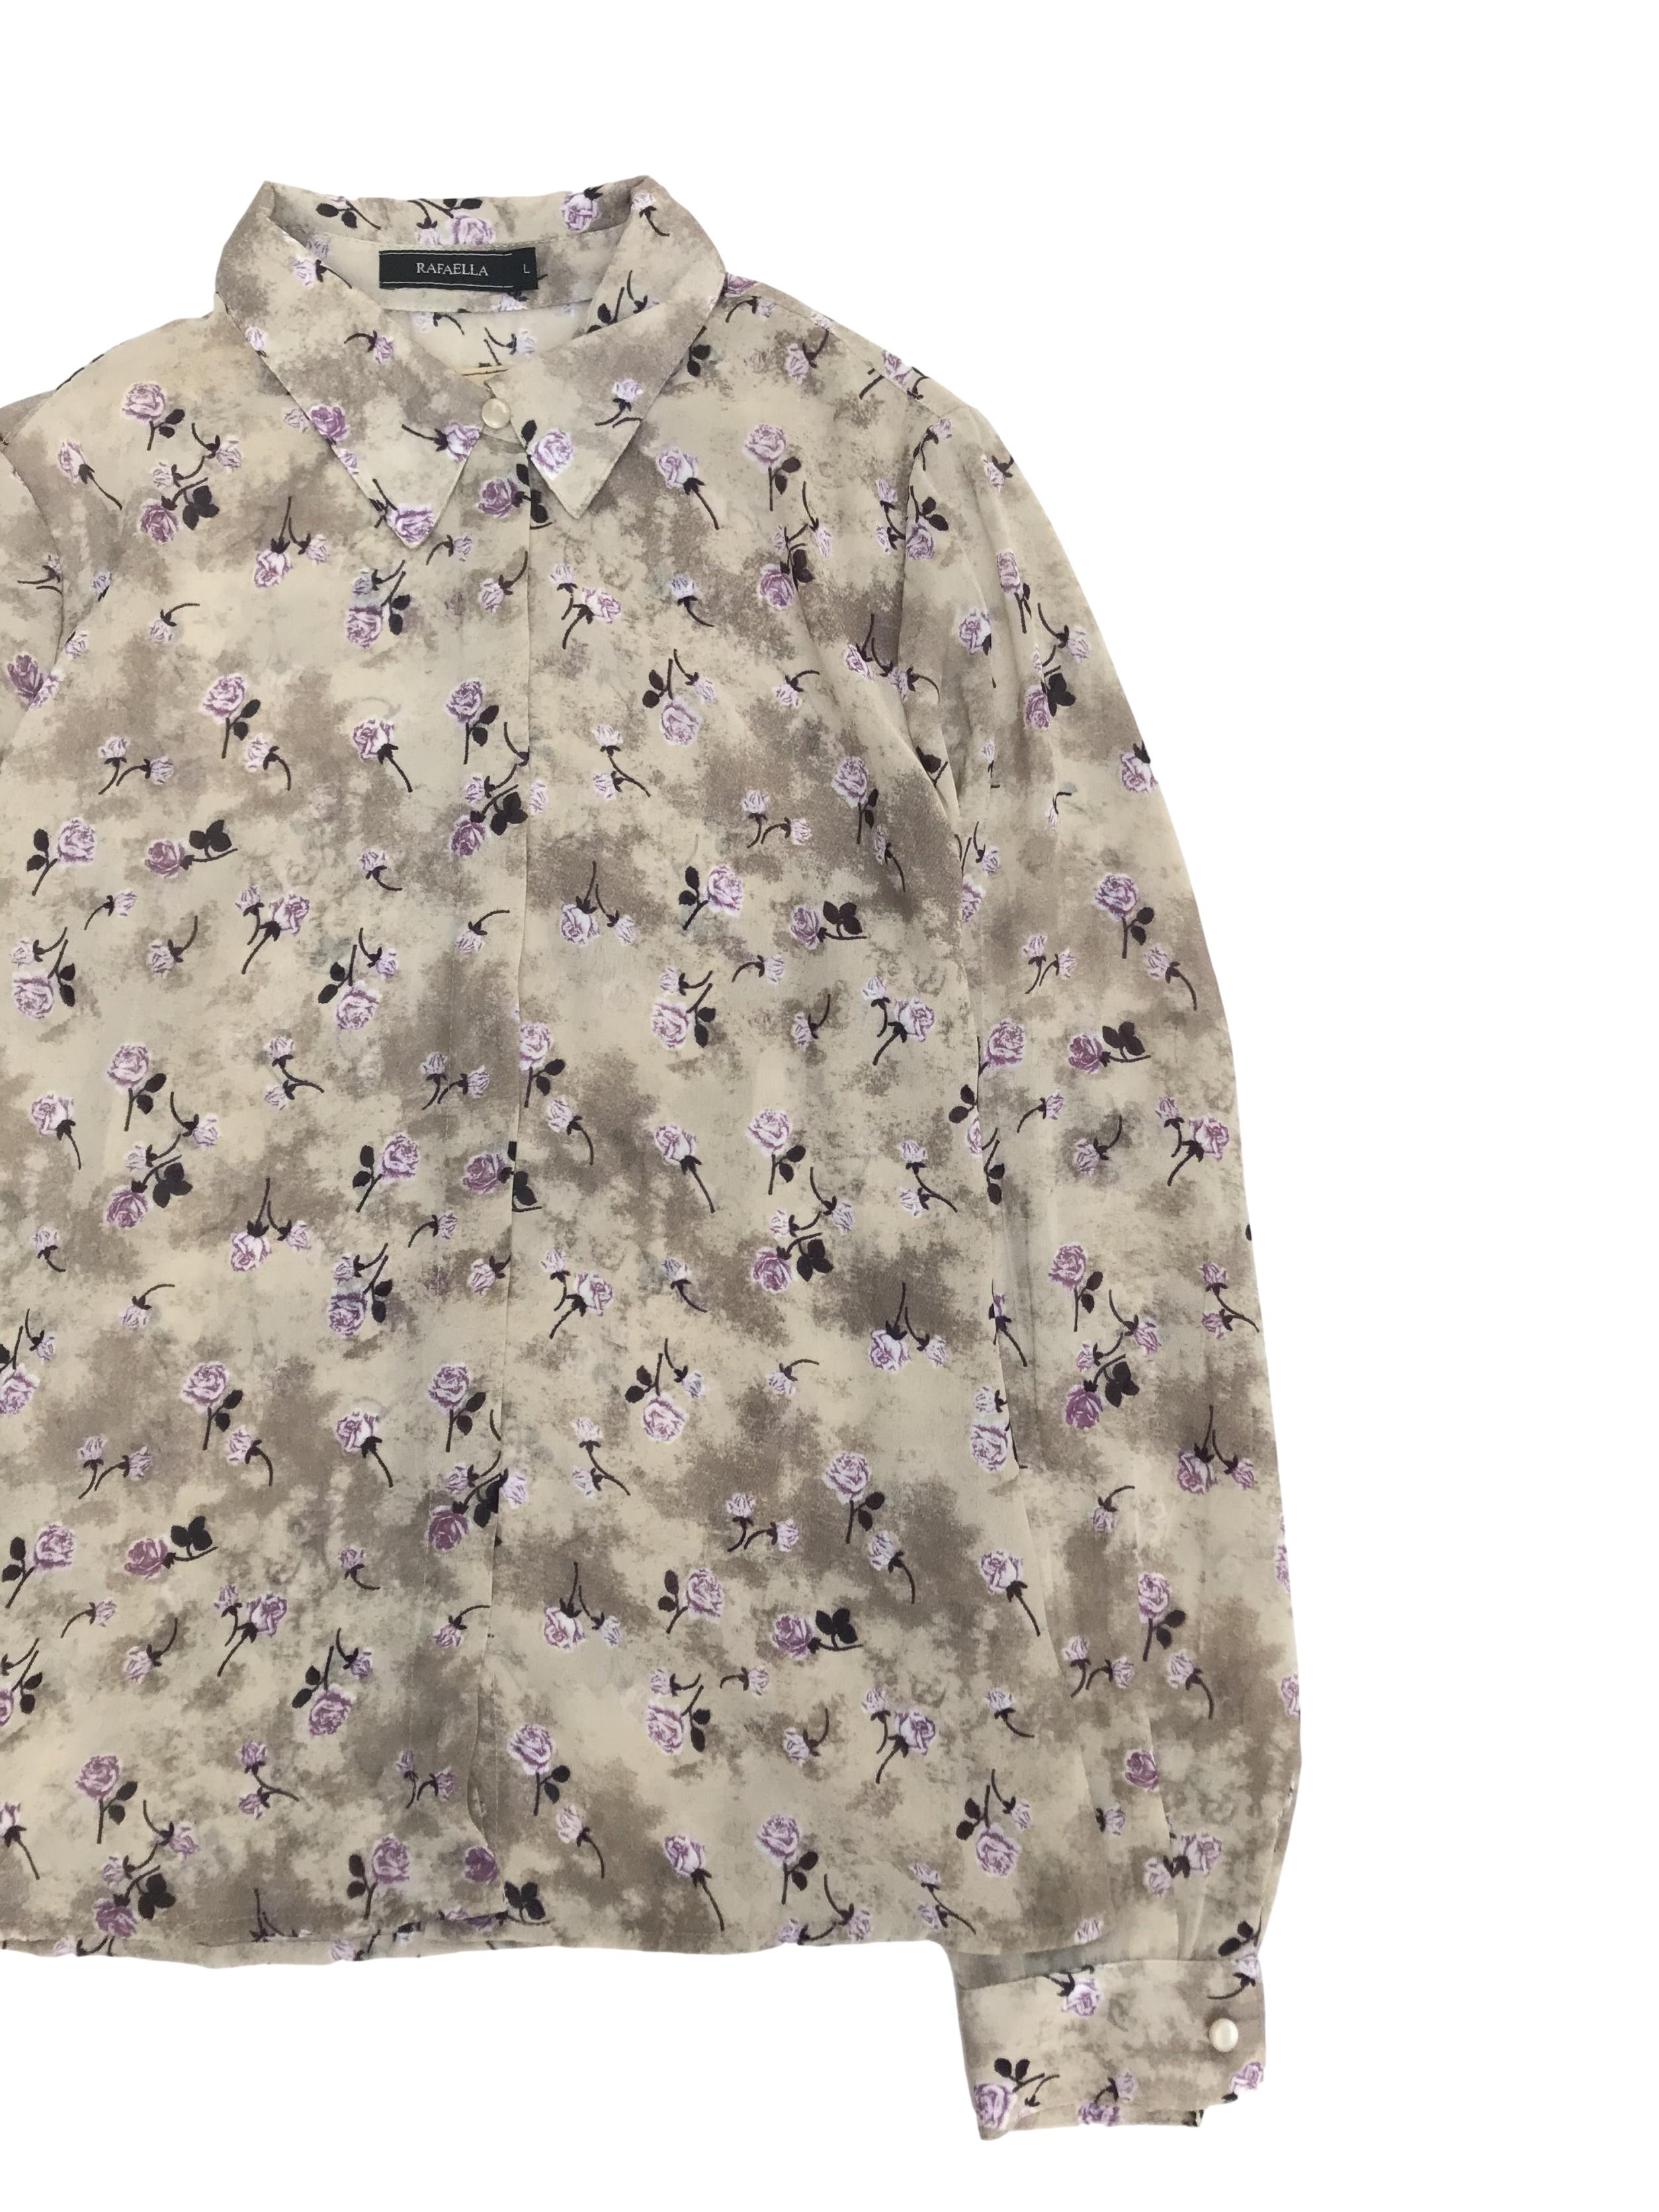 Blusa de gasa beige plomizo con estampado de flores moradas, camisera con botones delanteros recubiertos y pinzas en la espalda